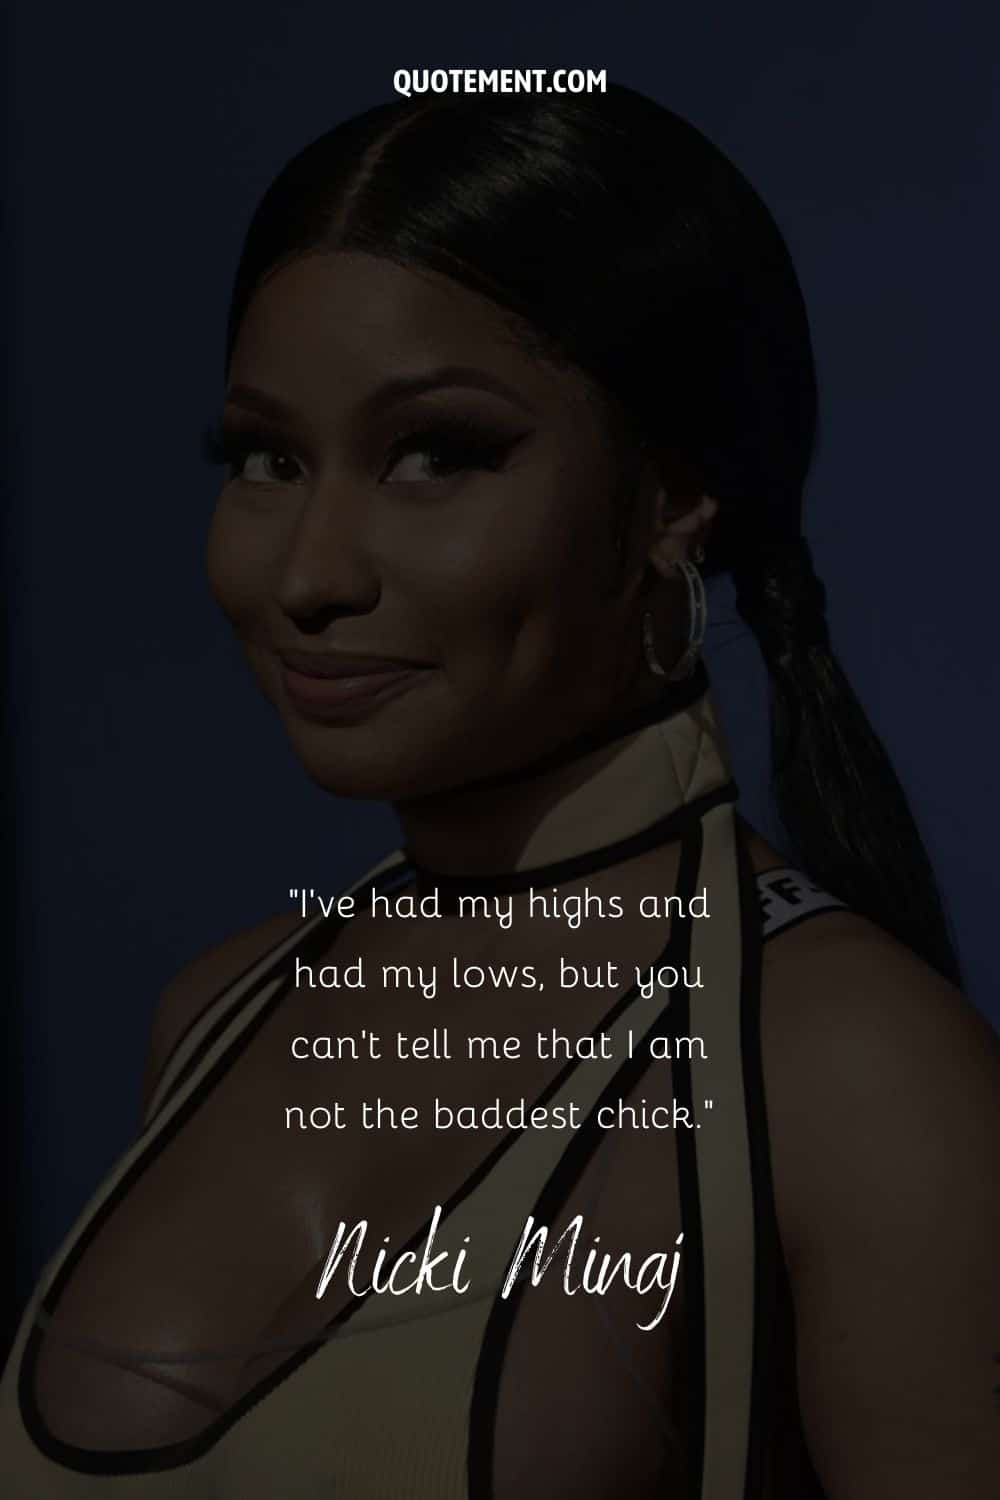 Divertida cita de Nicki Minaj y su retrato de fondo